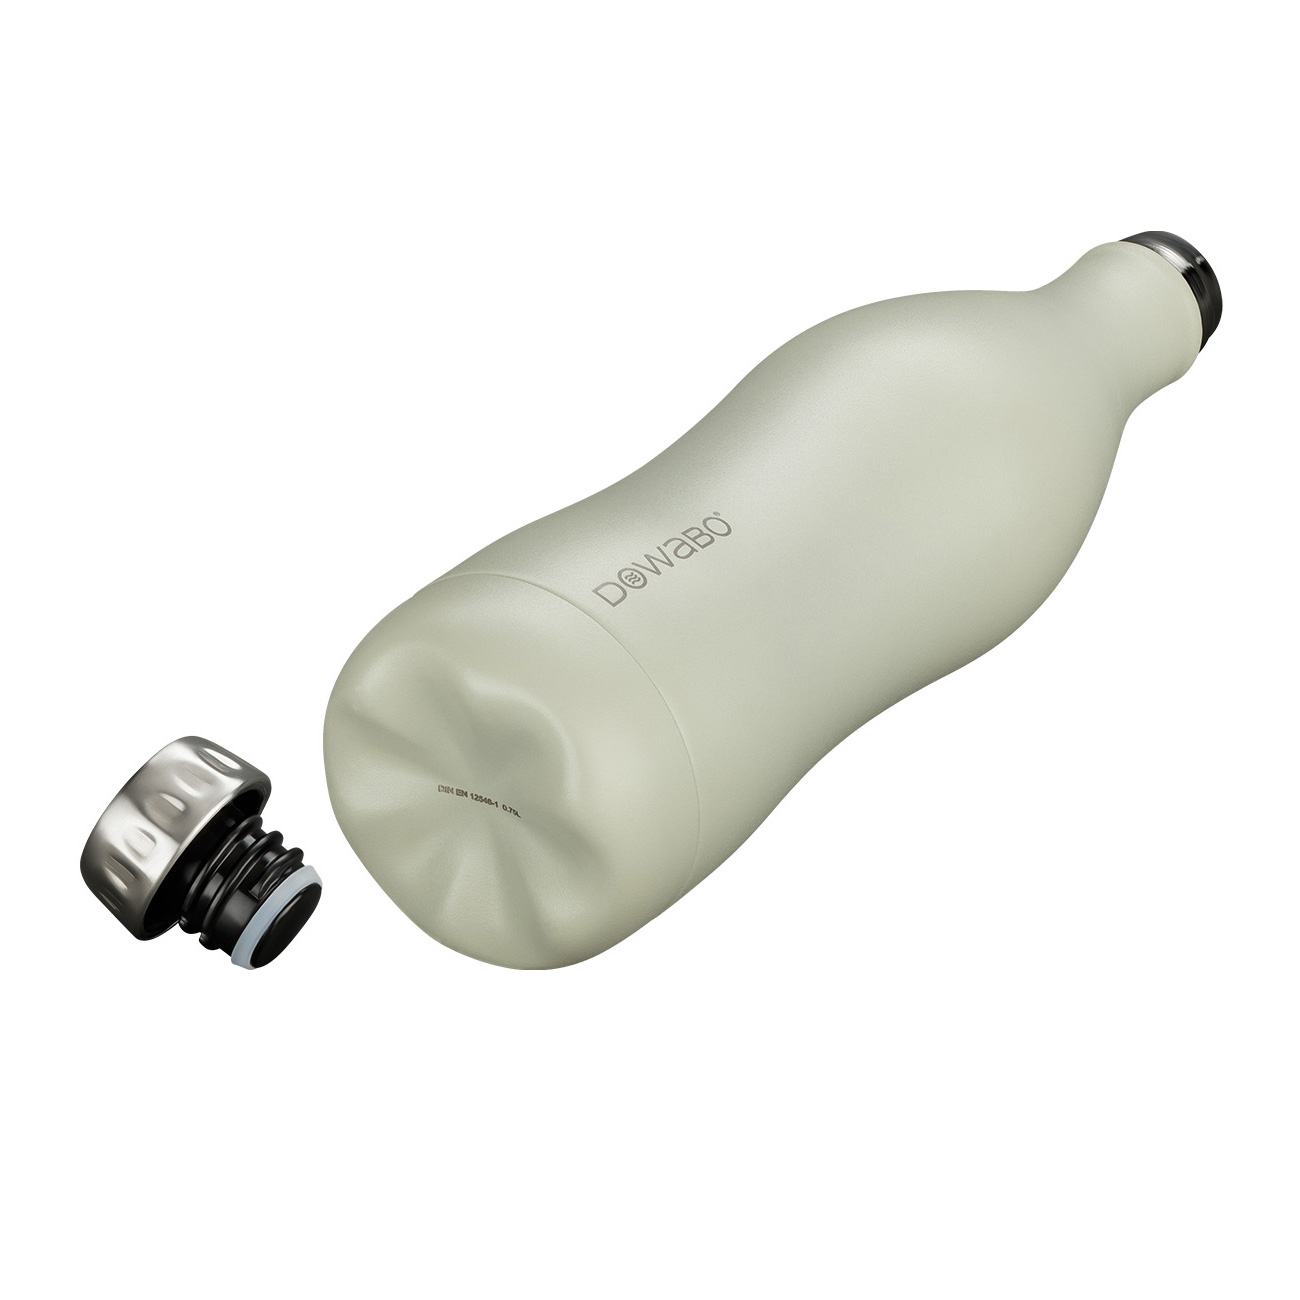 Dowabo Isolierflasche kohlensäuredicht 0,75 Liter beige matt Bild 1